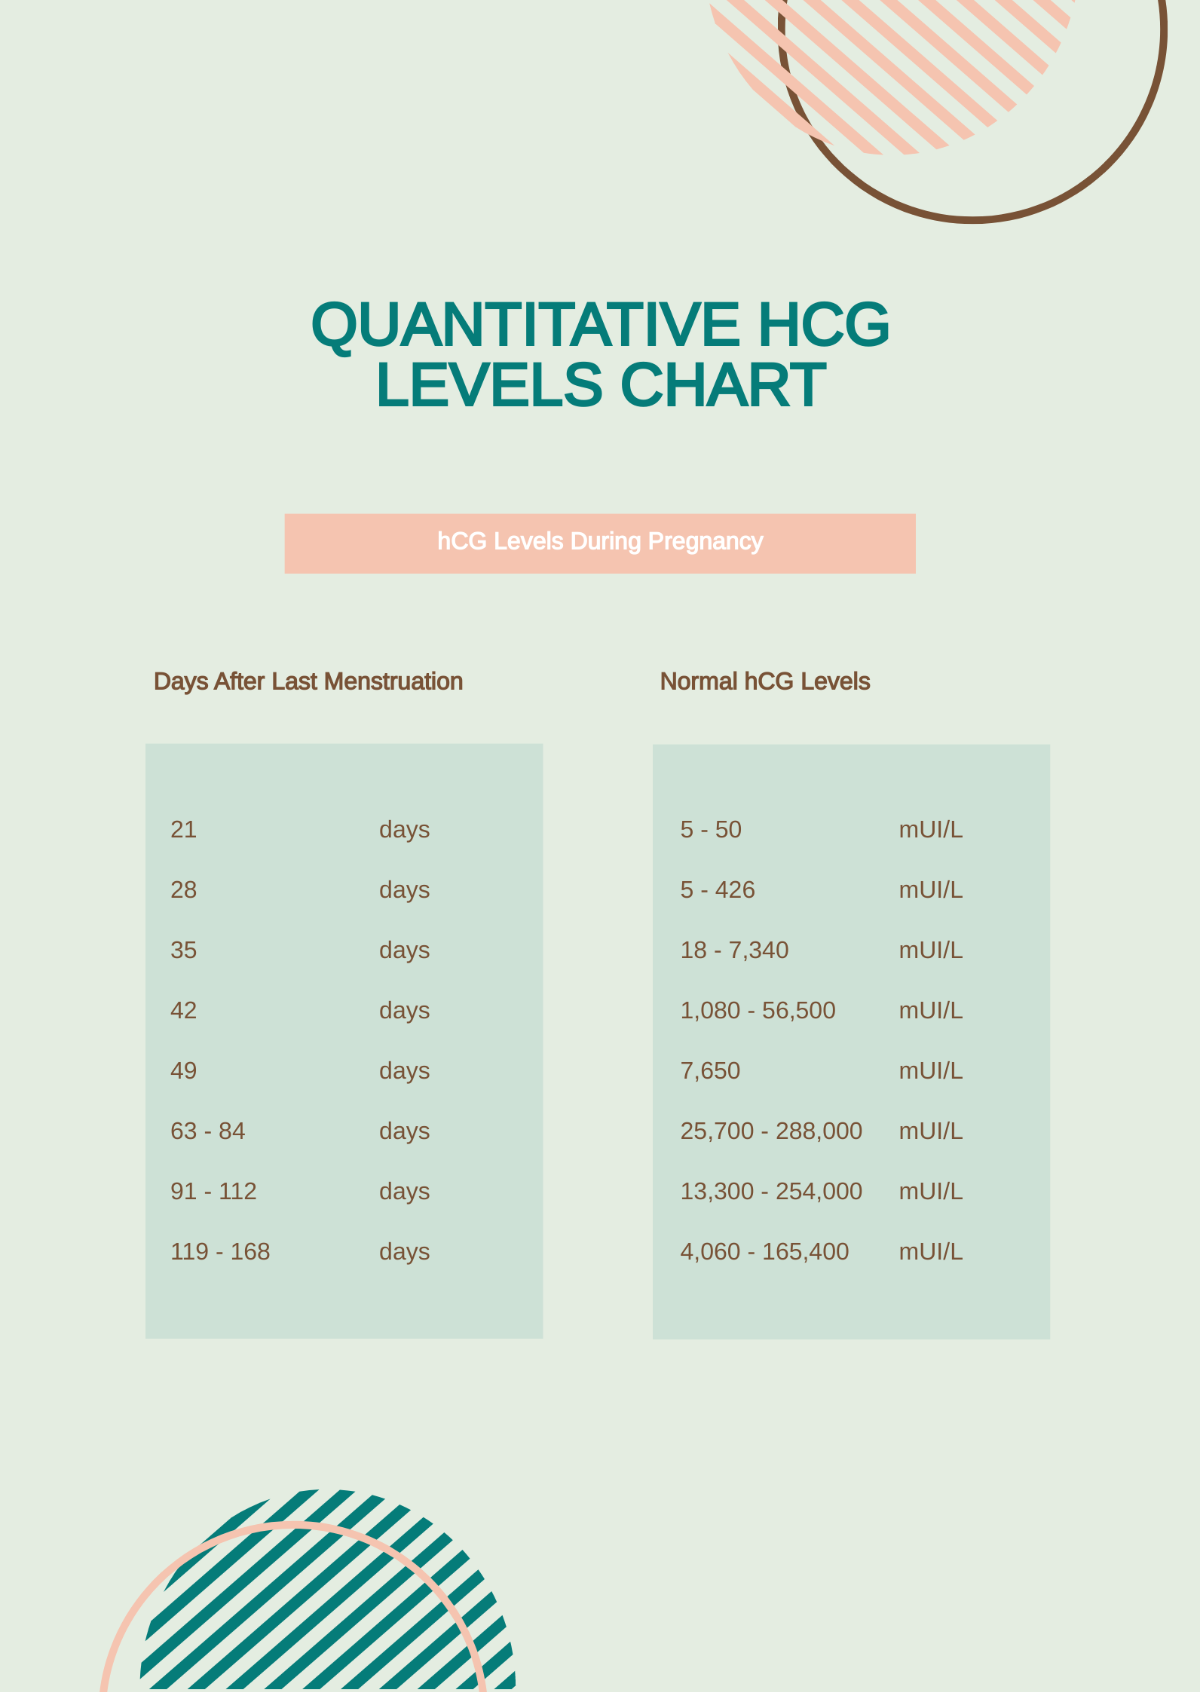 Quantitative HCG Levels Chart Template